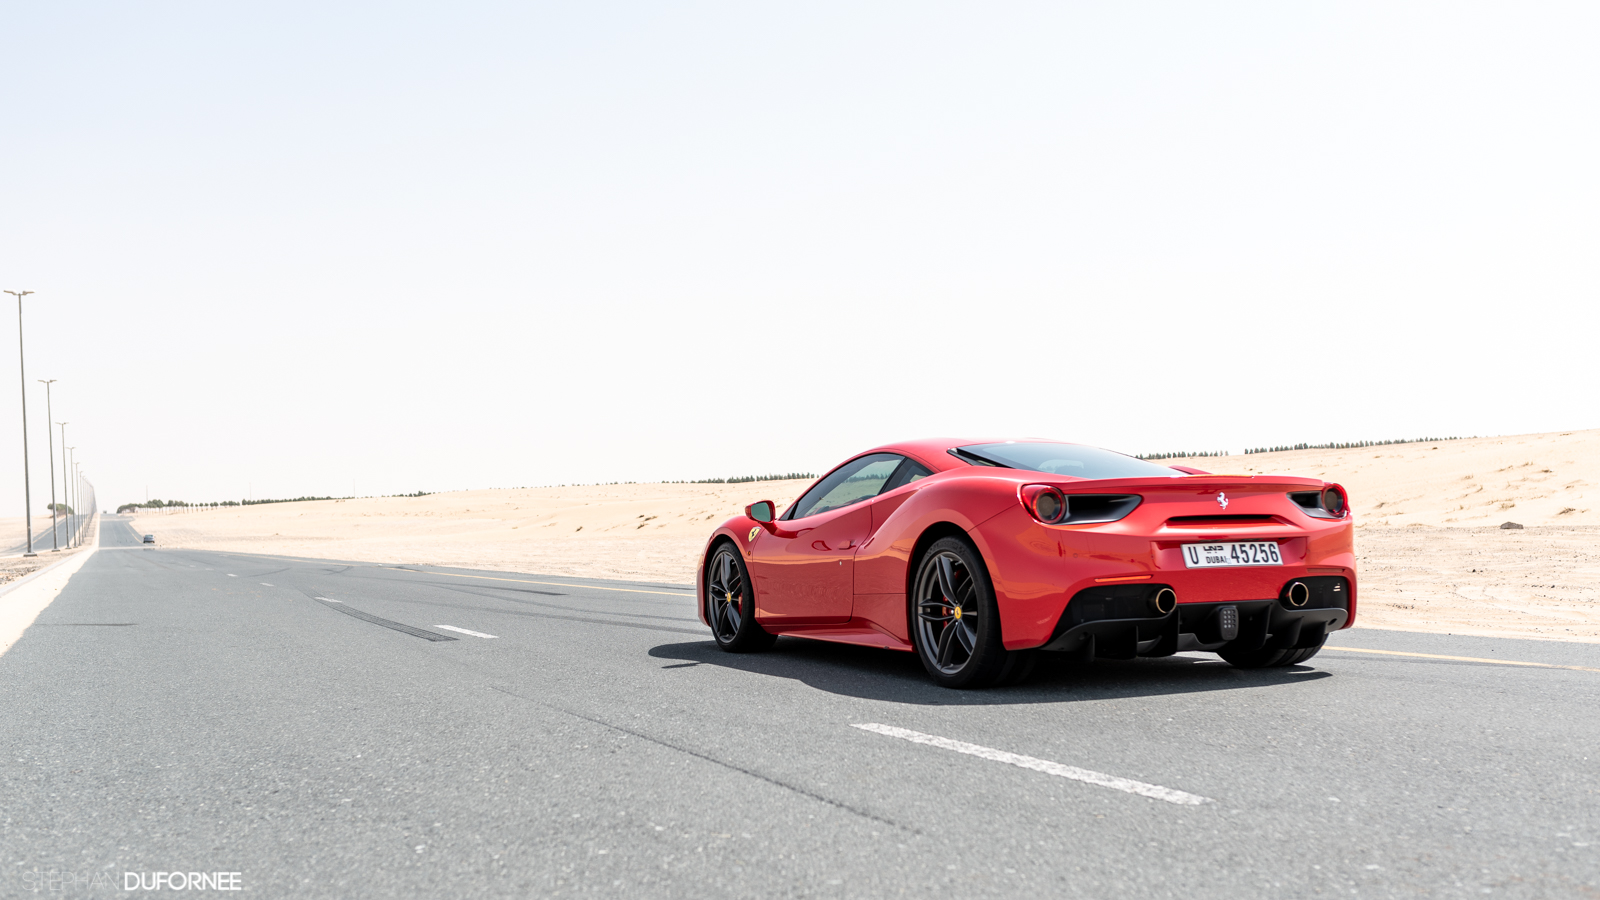 Special: cruising through Dubai in a Ferrari 488 GTB